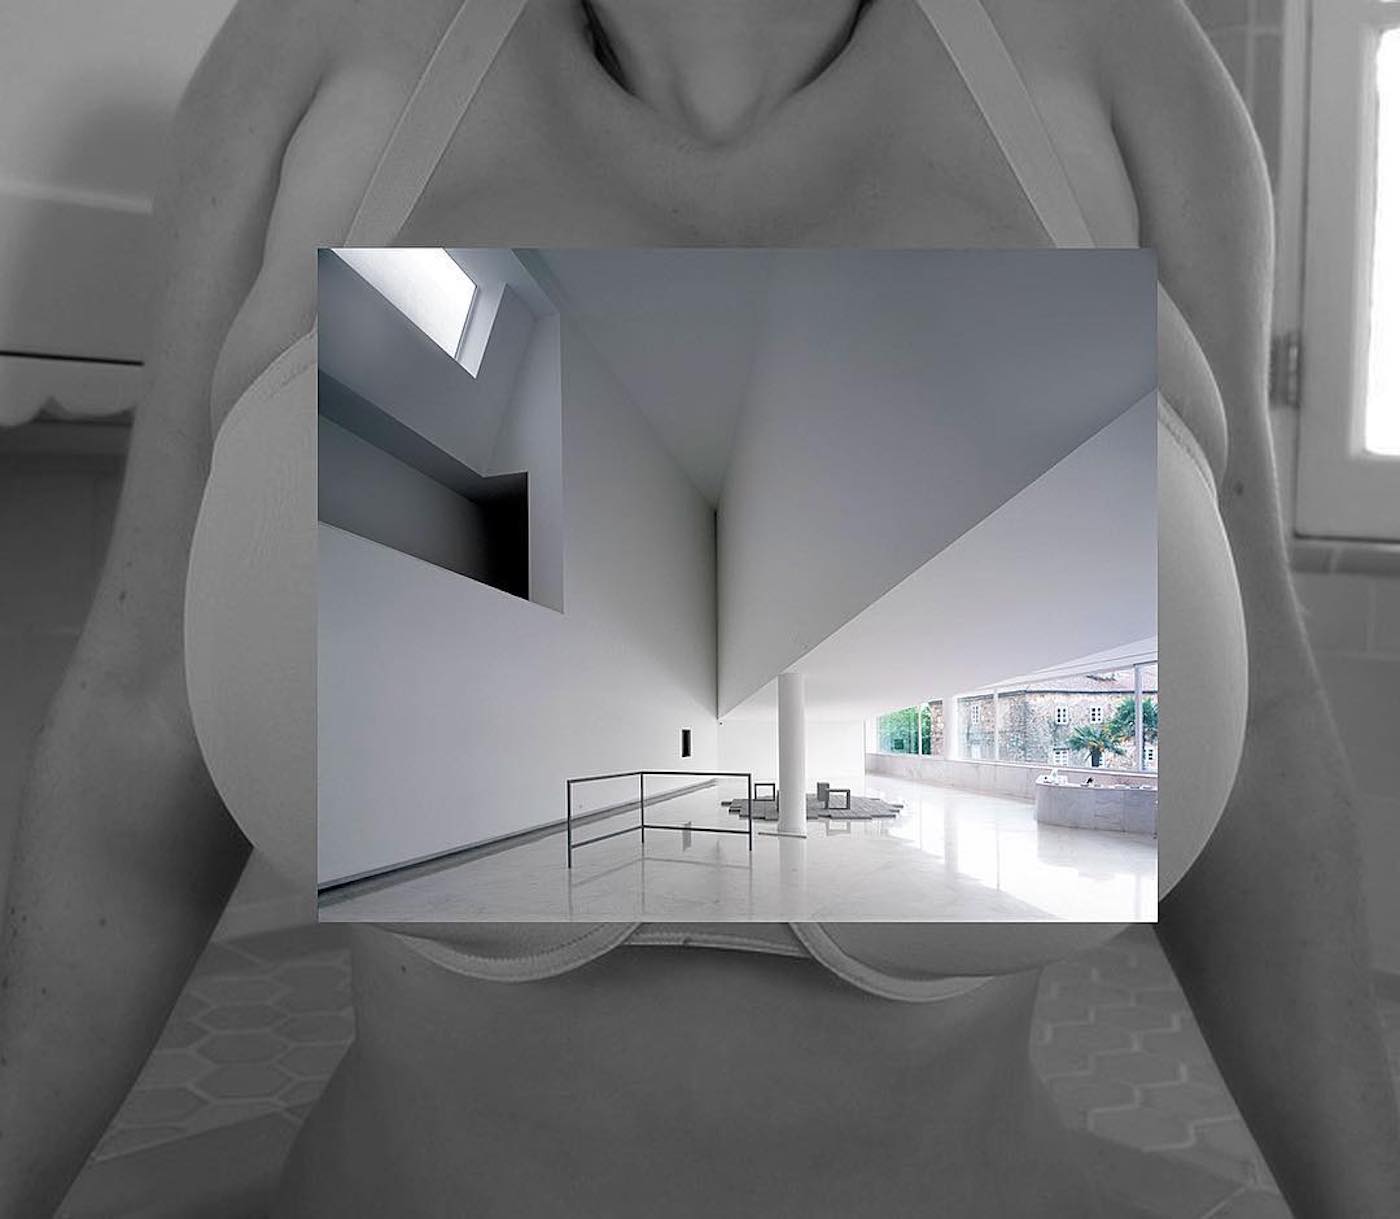 L'artiste Scientwehst fusionne architecture et clichés érotiques avec un résultat déroutant